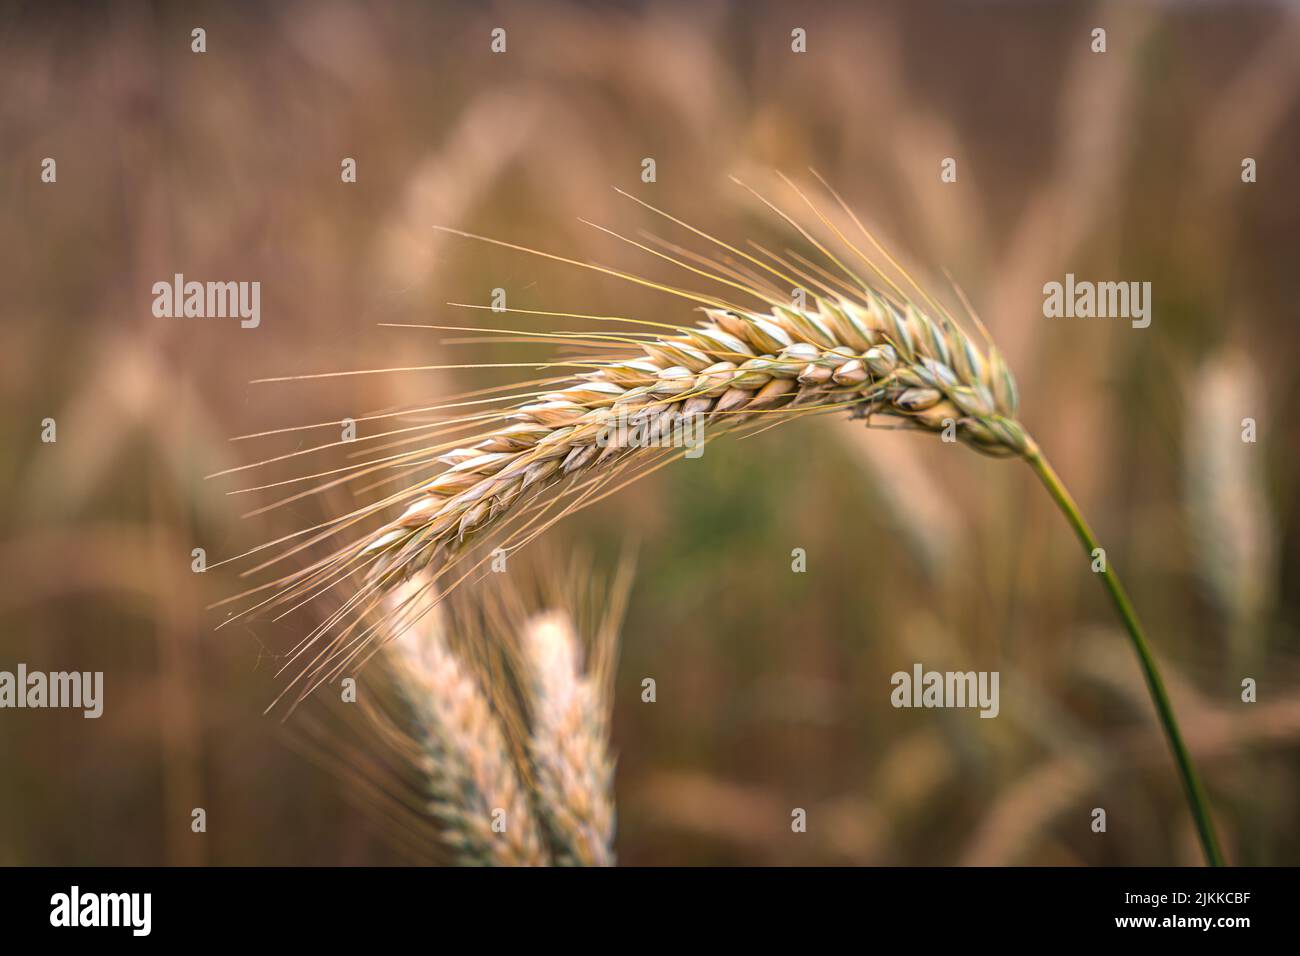 Goldene Ähren von Weizen auf dem Feld im Sonnenlicht. Weizenfelder am Ende des Sommers voll reif. Stockfoto